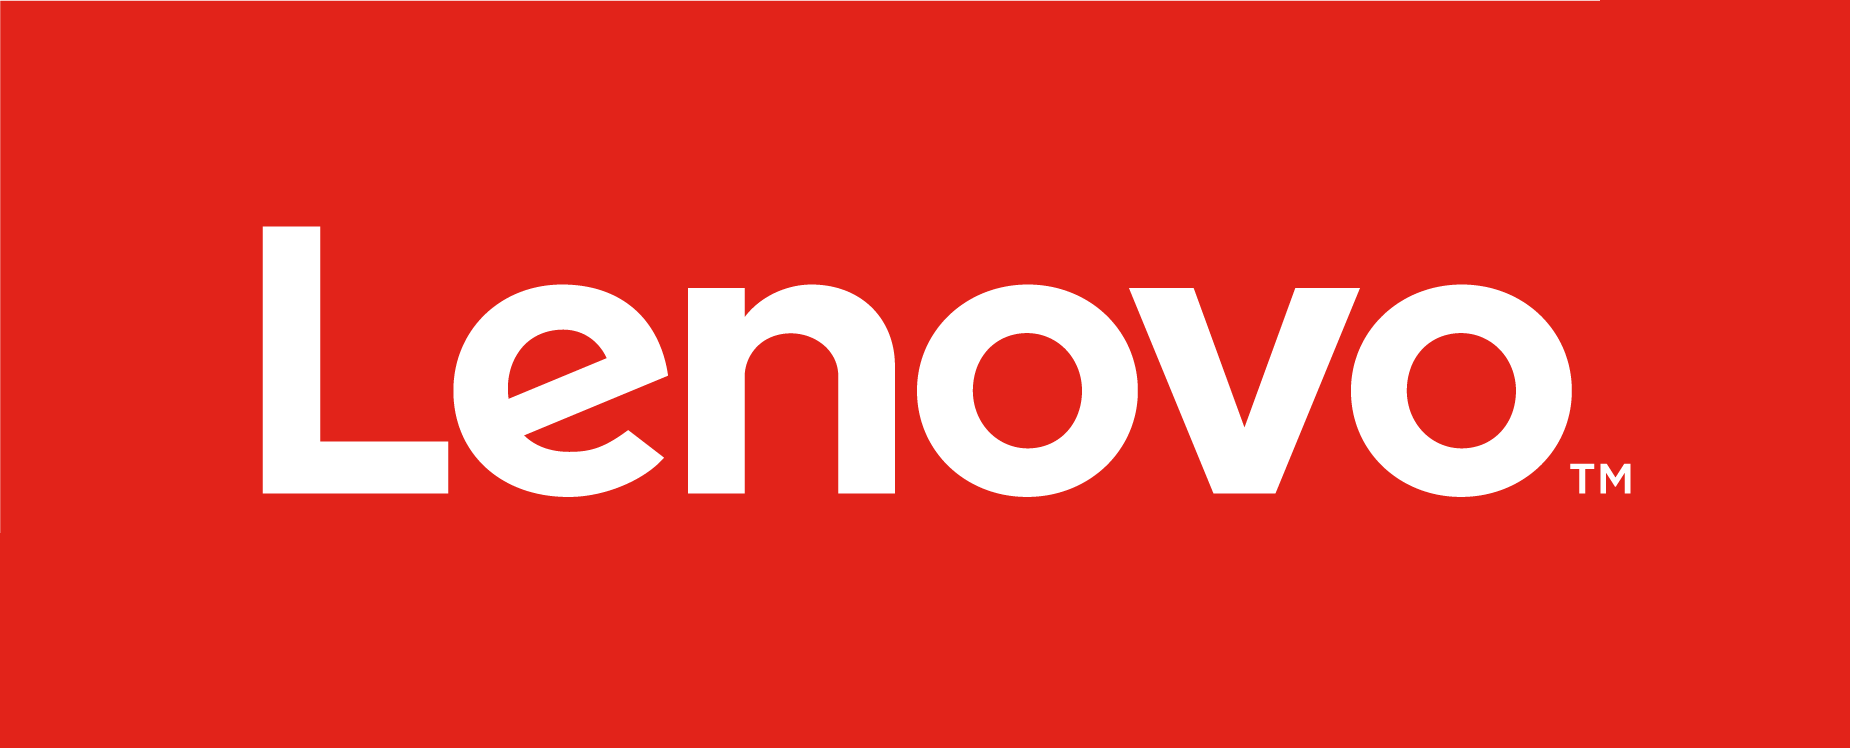 Lenovo تلفن مفهومی انعطاف پذیر، دستیار هوش مصنوعی و چند طرح مفهومی دیگر را به نمایش گذاشت